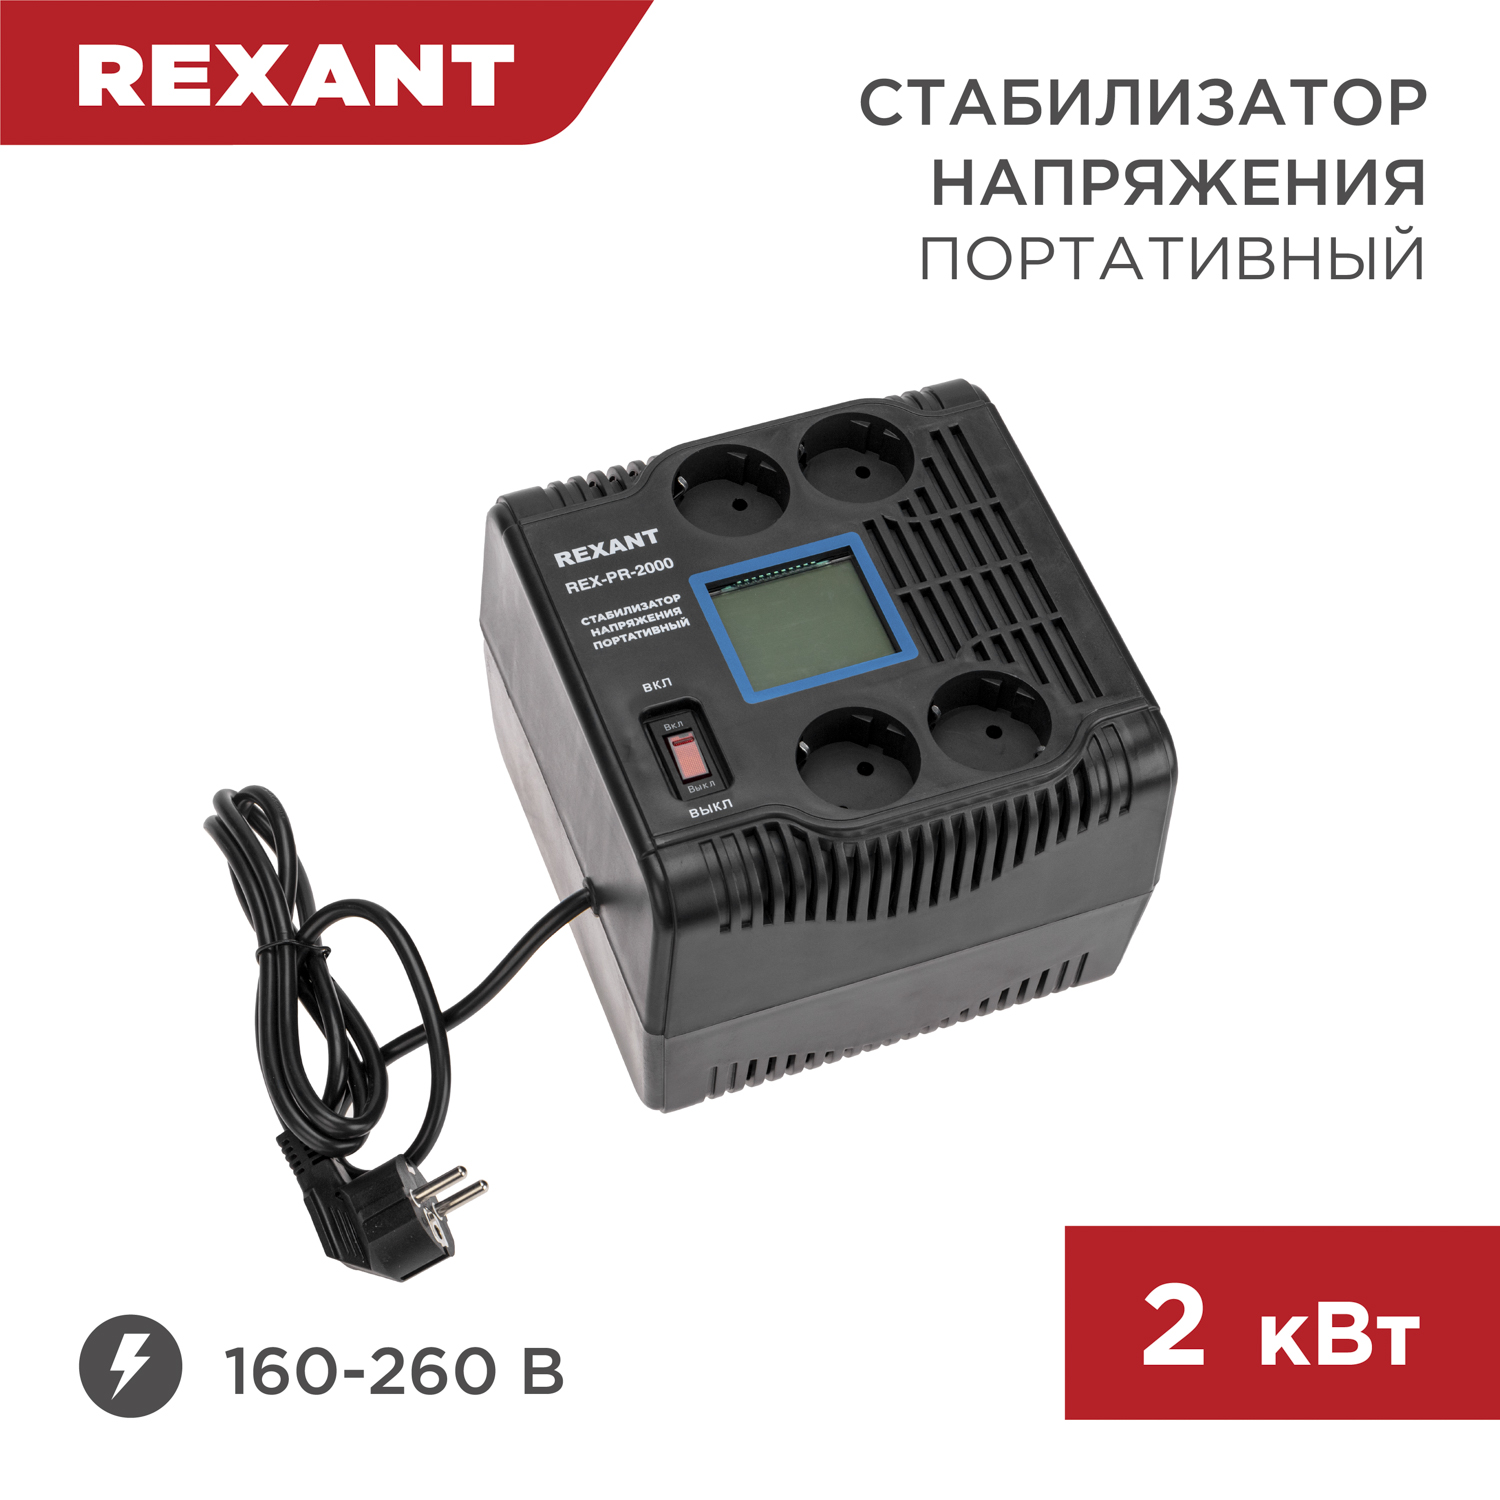 Стабилизатор напряжения портативный REXANT REX-PR-2000 11-5032 стабилизатор напряжения портативный rexant rex pr 500 11 5037